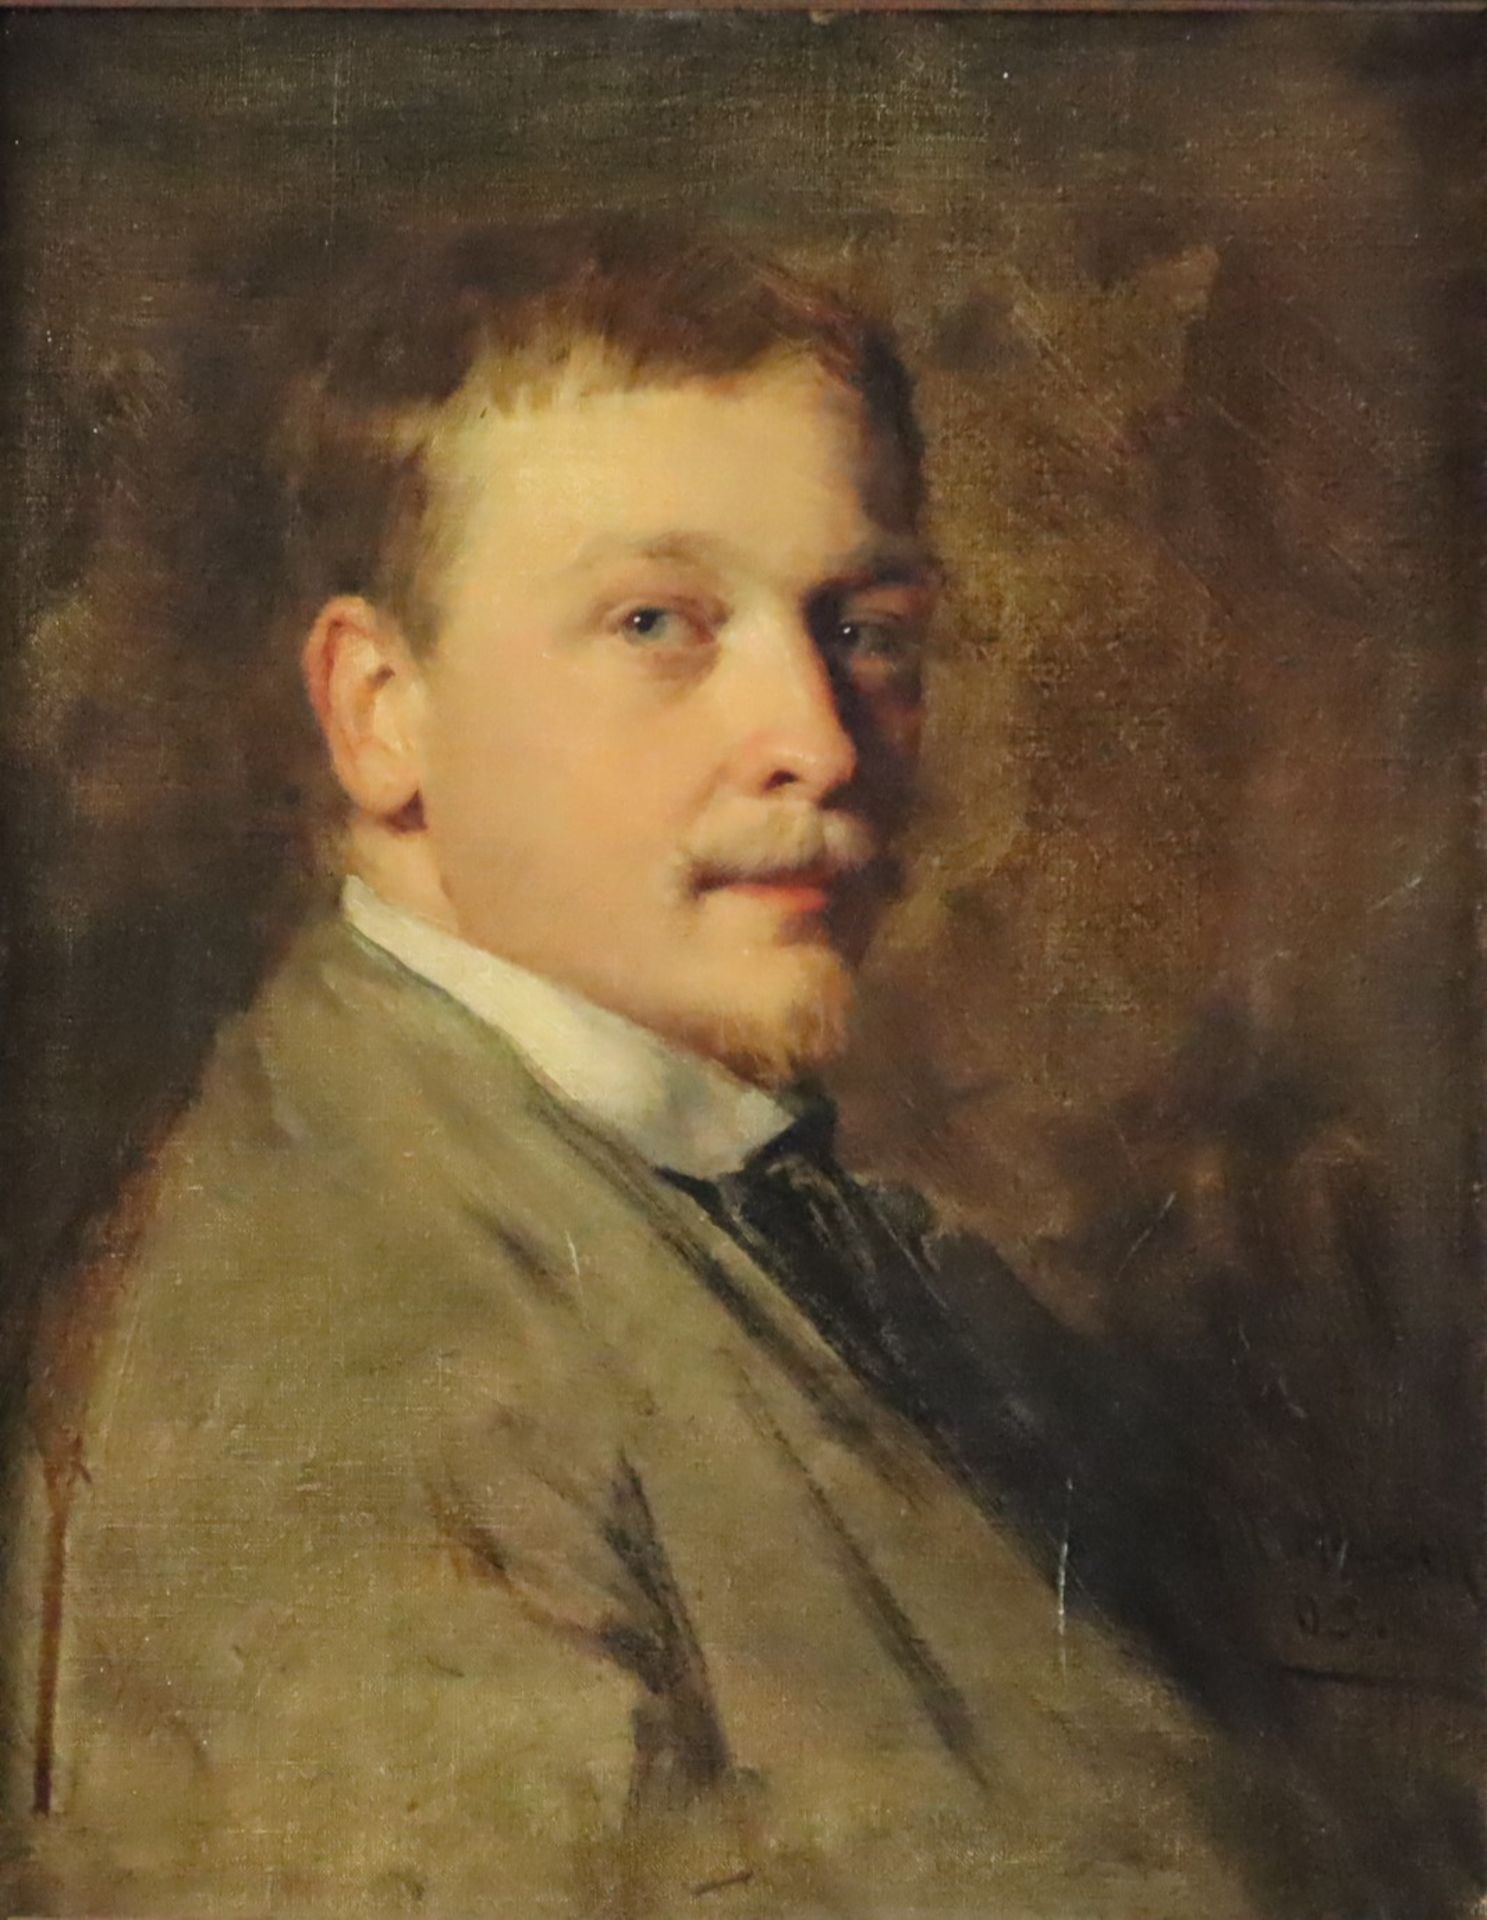 Bildnismaler um 1900- Eindringliches Portrait eines jungen Mannes mit blondem Haar, Öl auf Leinwand